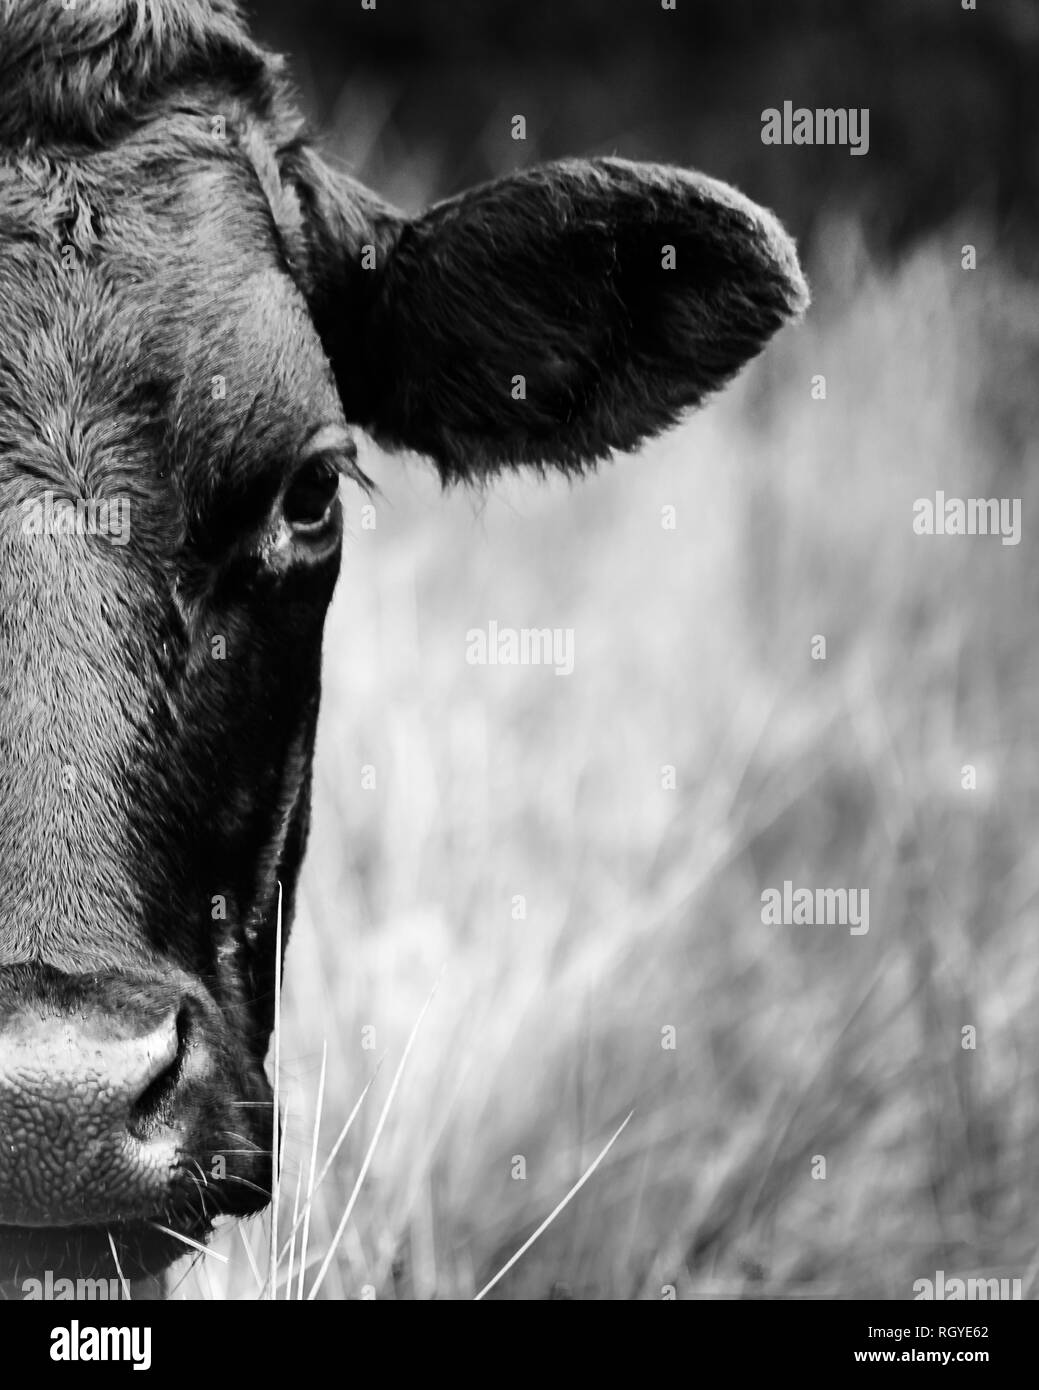 La moitié droite de la tête d'une vache noire, regardant la caméra, se tenait dans un champ Banque D'Images